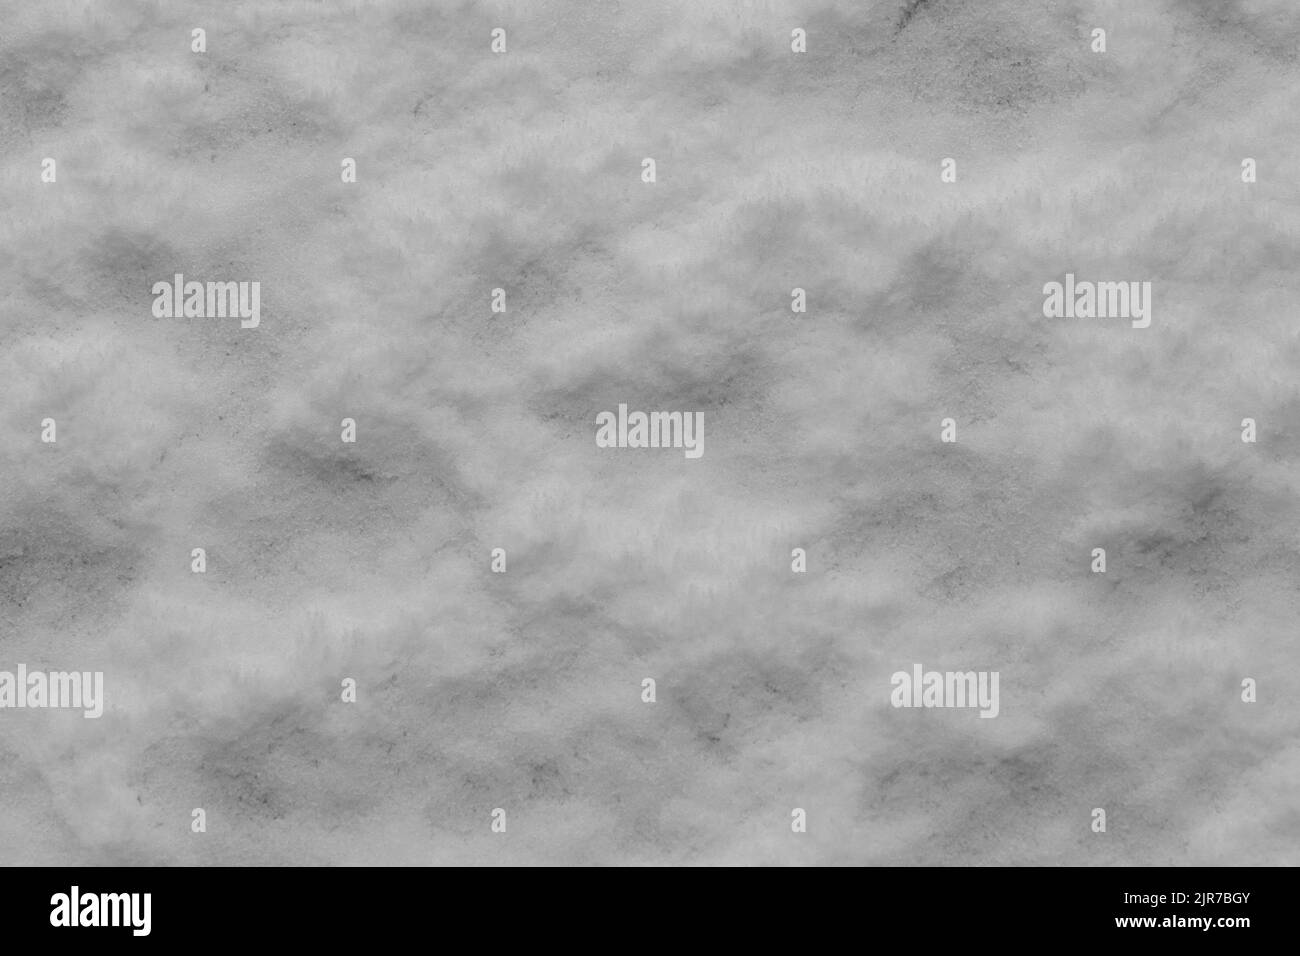 Schnee auf dem Boden ergibt ein flauschiges, strukturiertes Muster, das als Hintergrund verwendet werden kann. Stockfoto